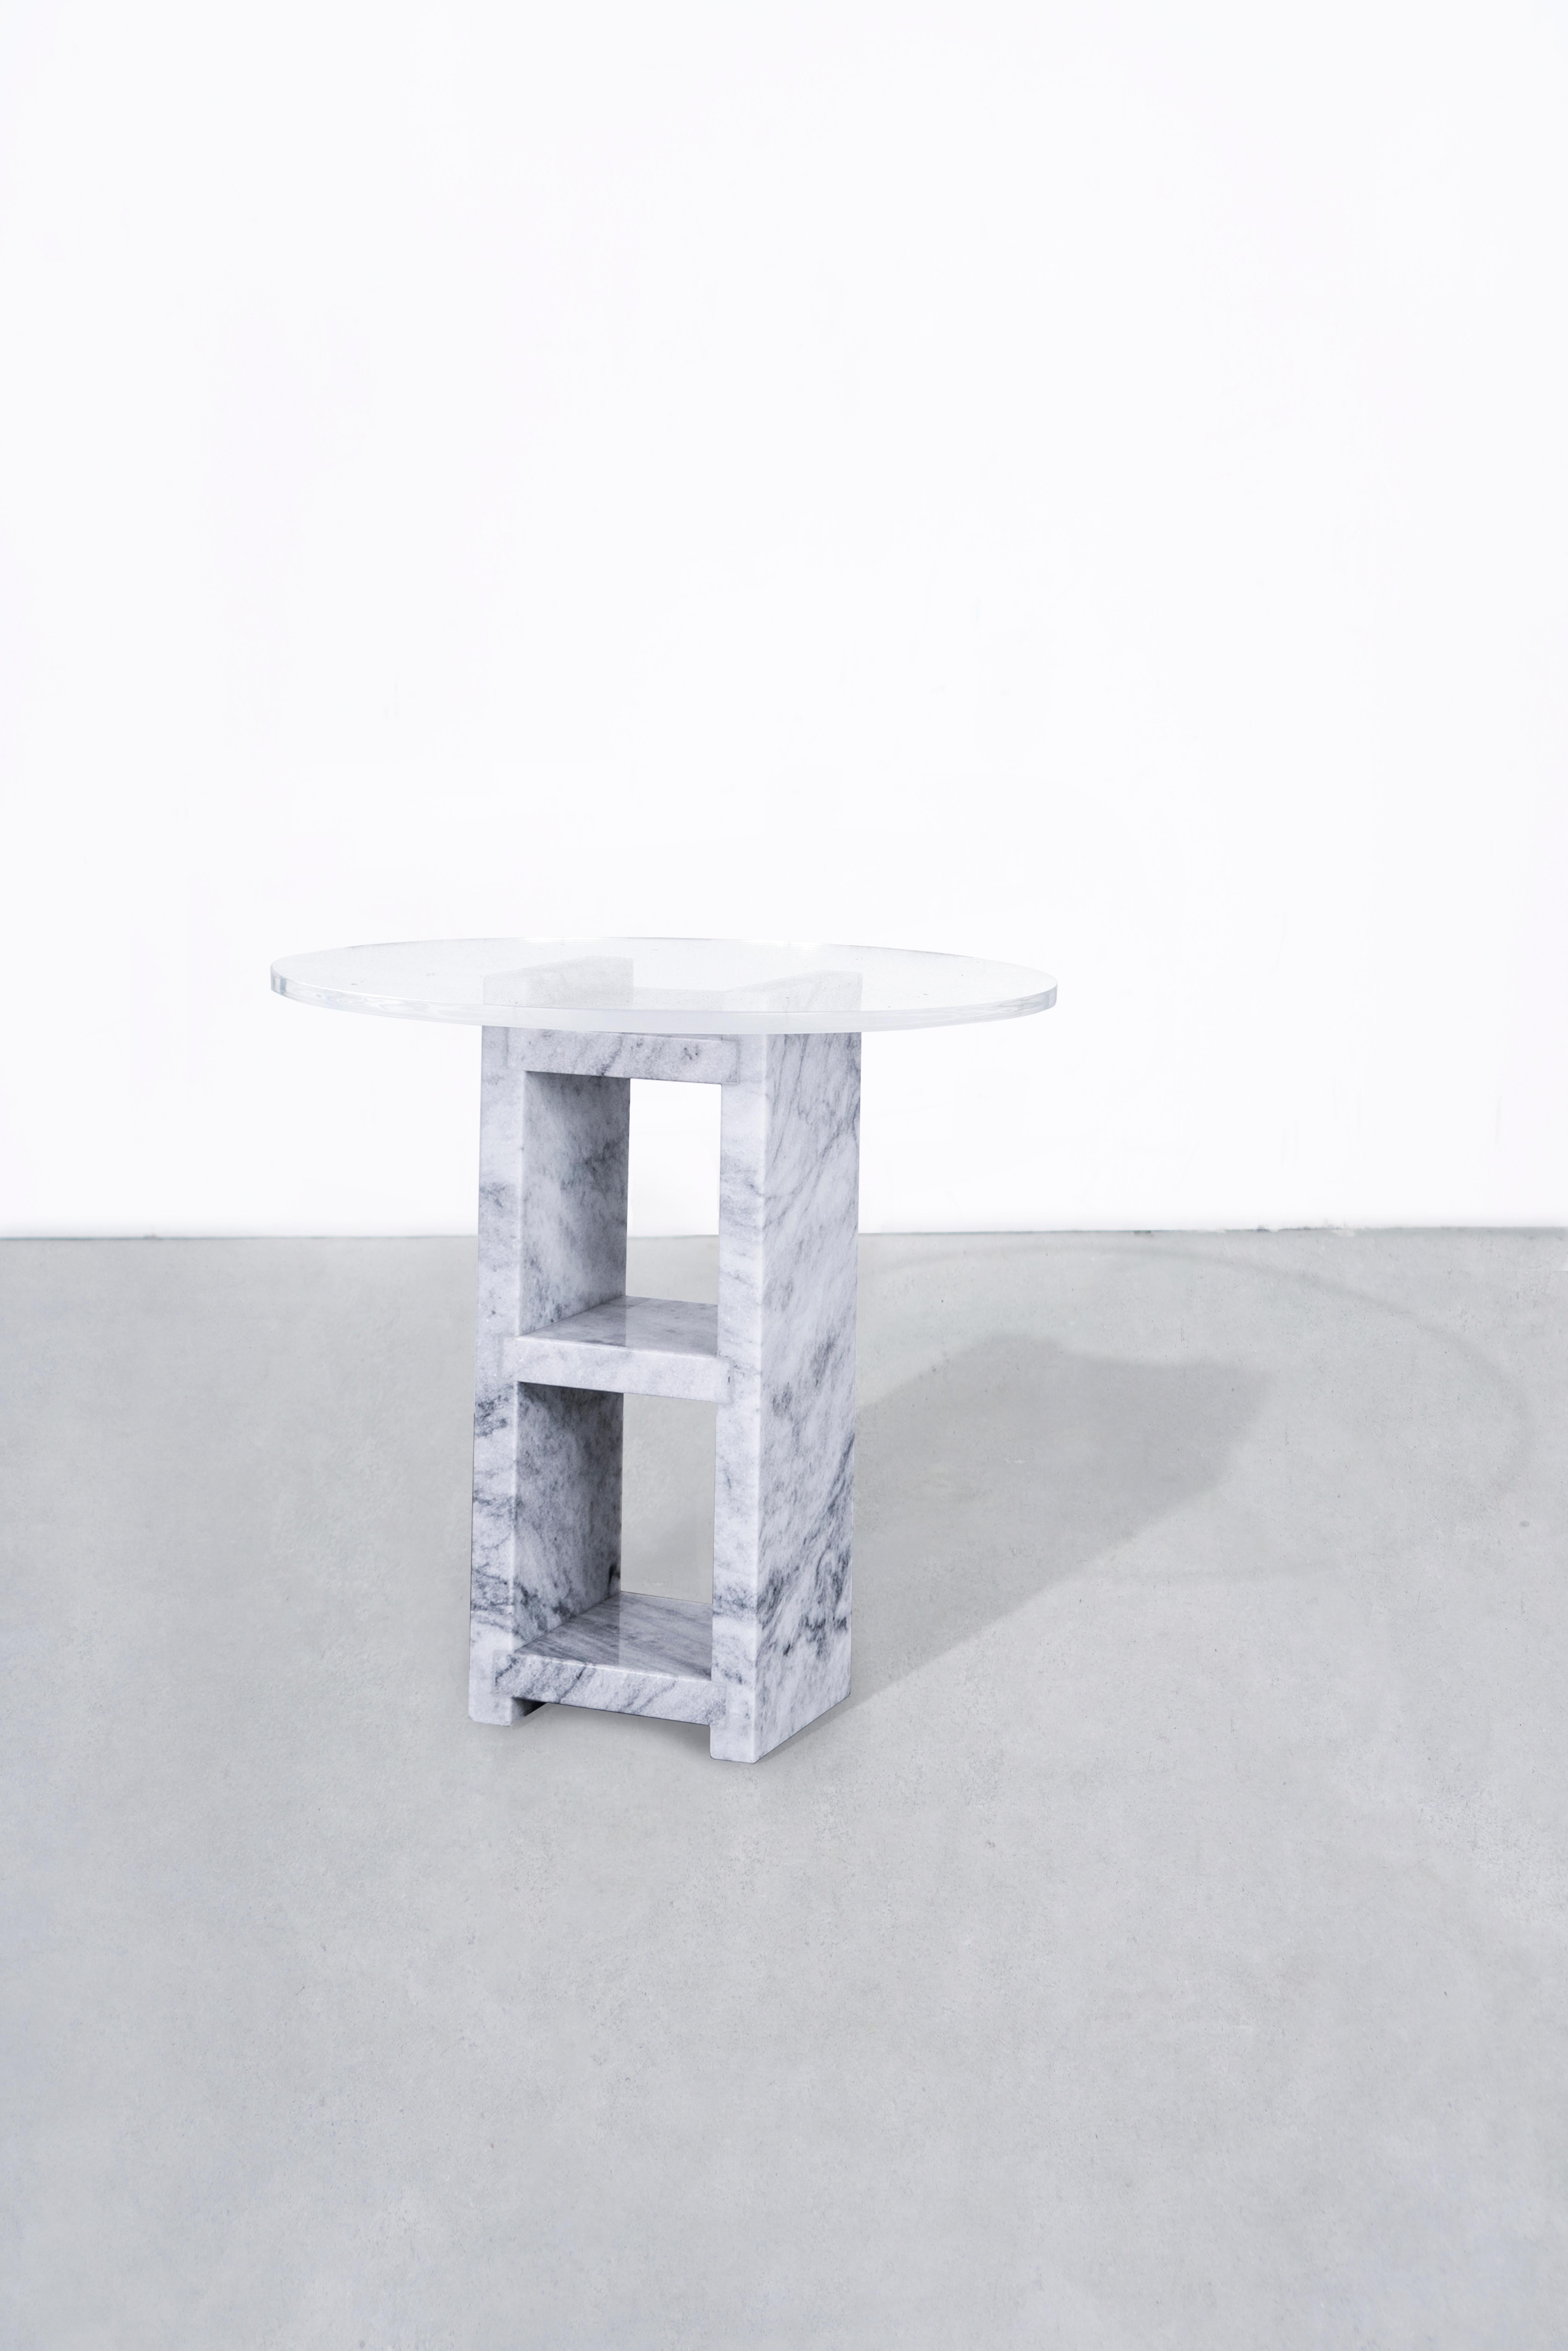 Beschreibung:
1 Wasserstrahlgeschnittener, handpolierter Carrara-Marmorblock, der eine Tischplatte aus gehärtetem Glas trägt.
Starphire-Glasplatte.
Modular.
Auf Bestellung in NYC hergestellt.

Abmessungen
Schlackenblock Länge